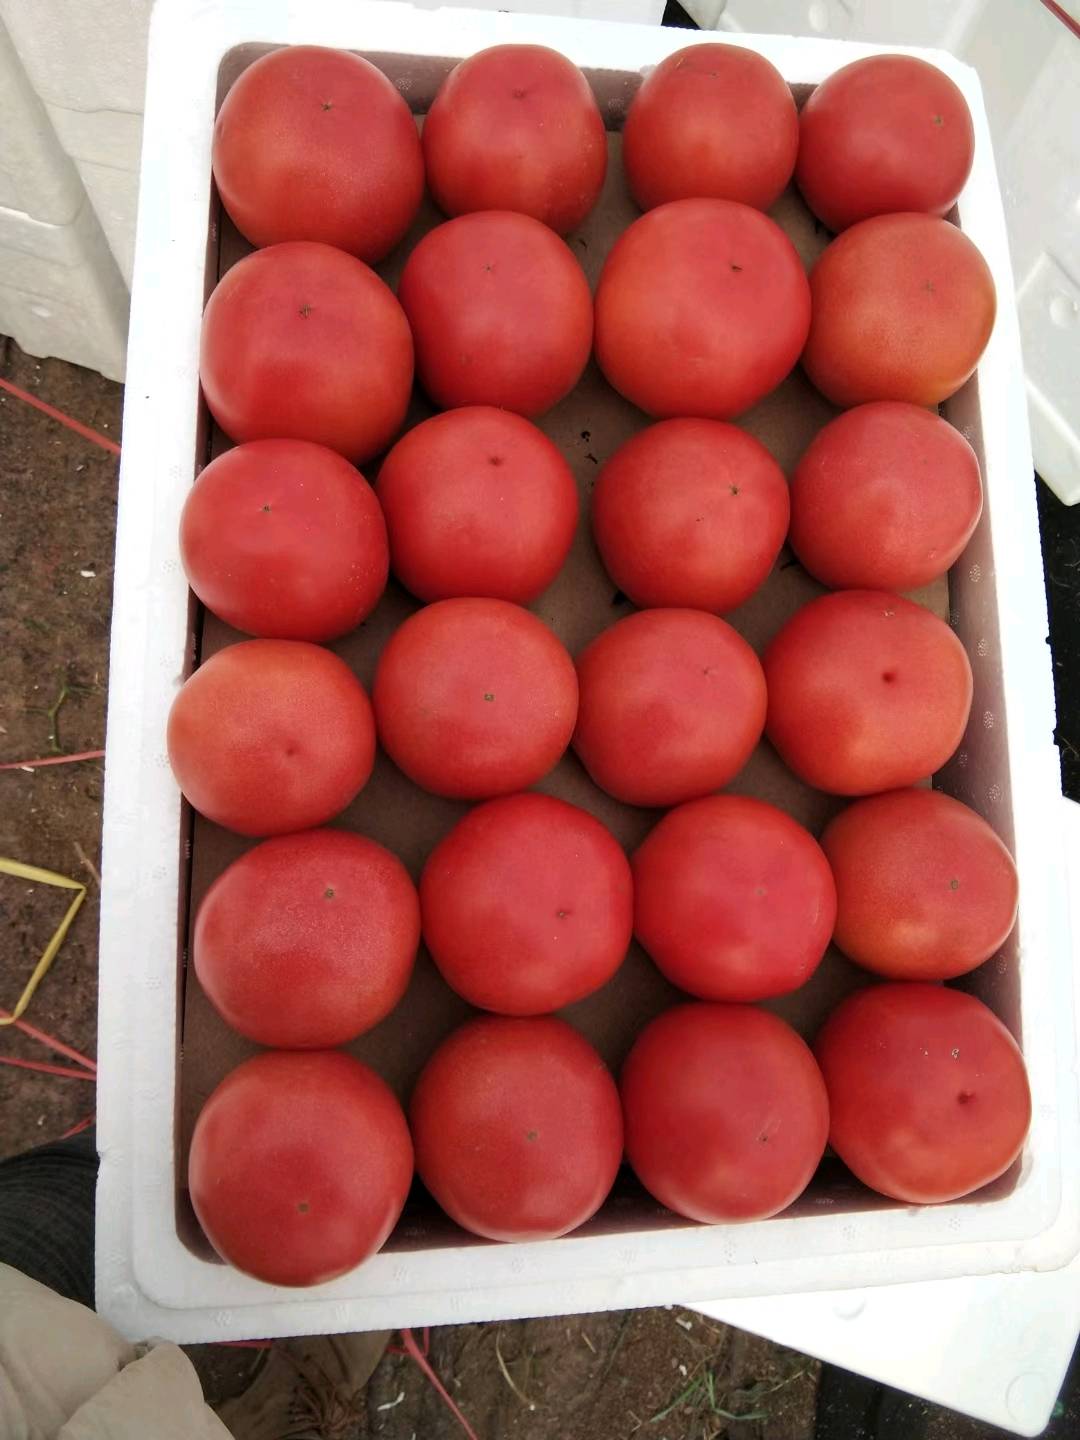 硬粉西红柿大量上市。价格便宜。货量大。颜色红硬度高